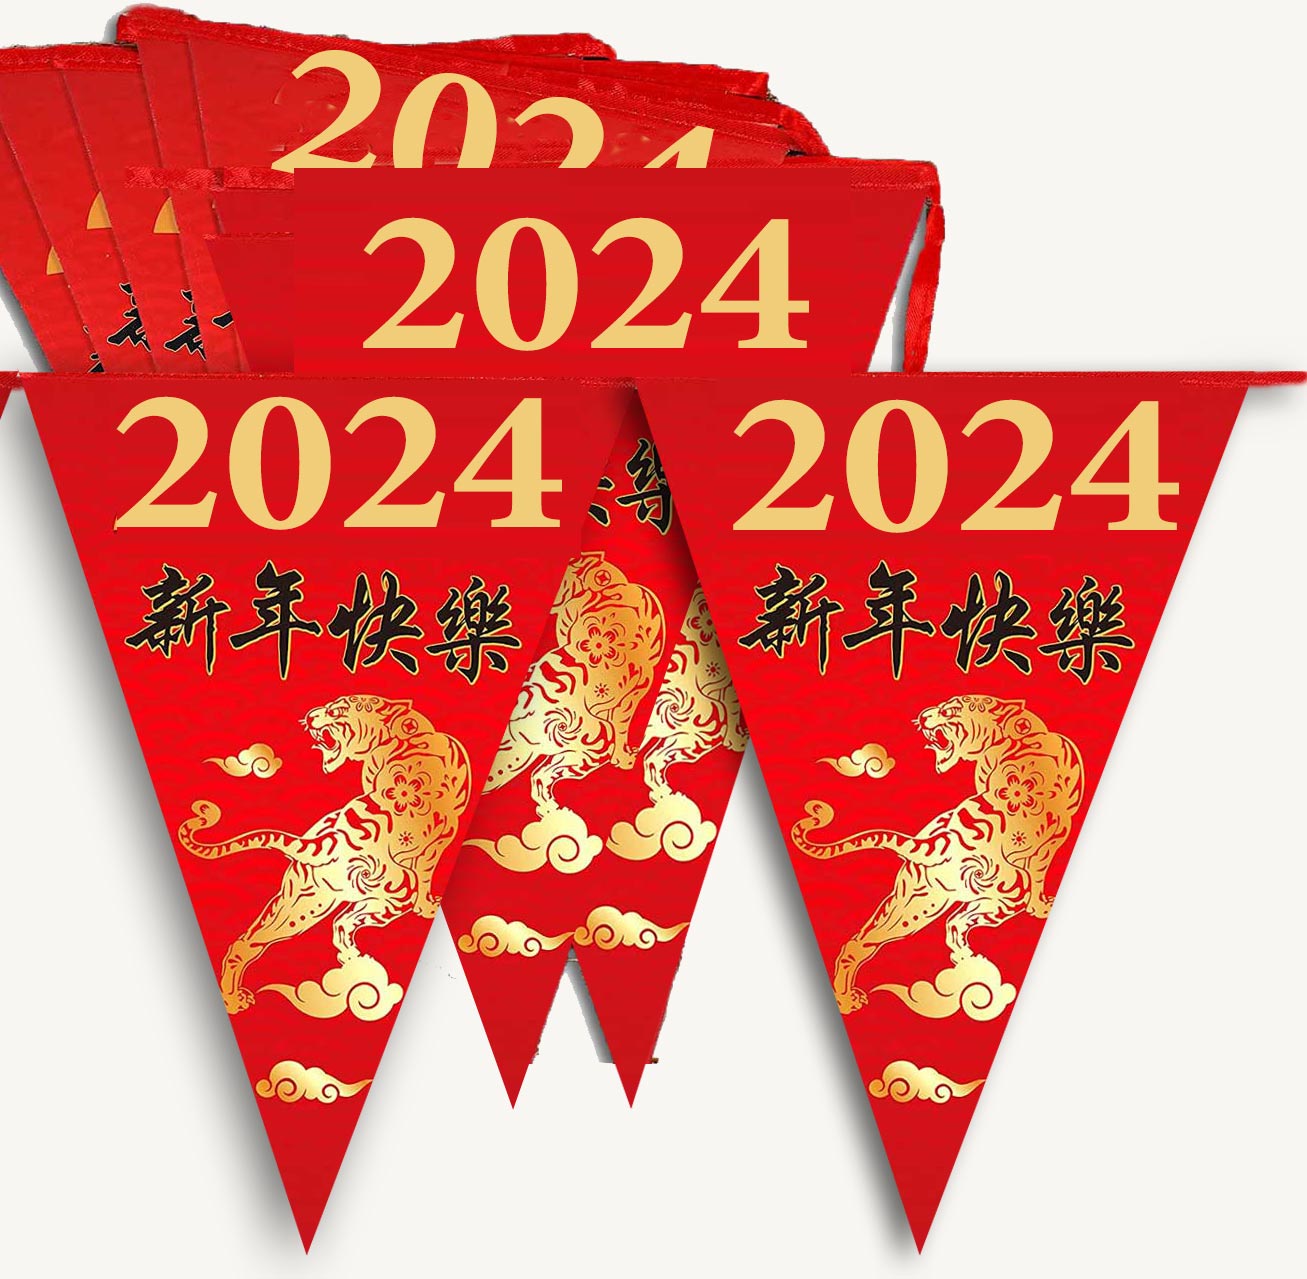 GUIRLANDE NOUVEL AN CHINOIS 2024 : vente d'article de fête et de décoration  depuis 2010 situé en France.